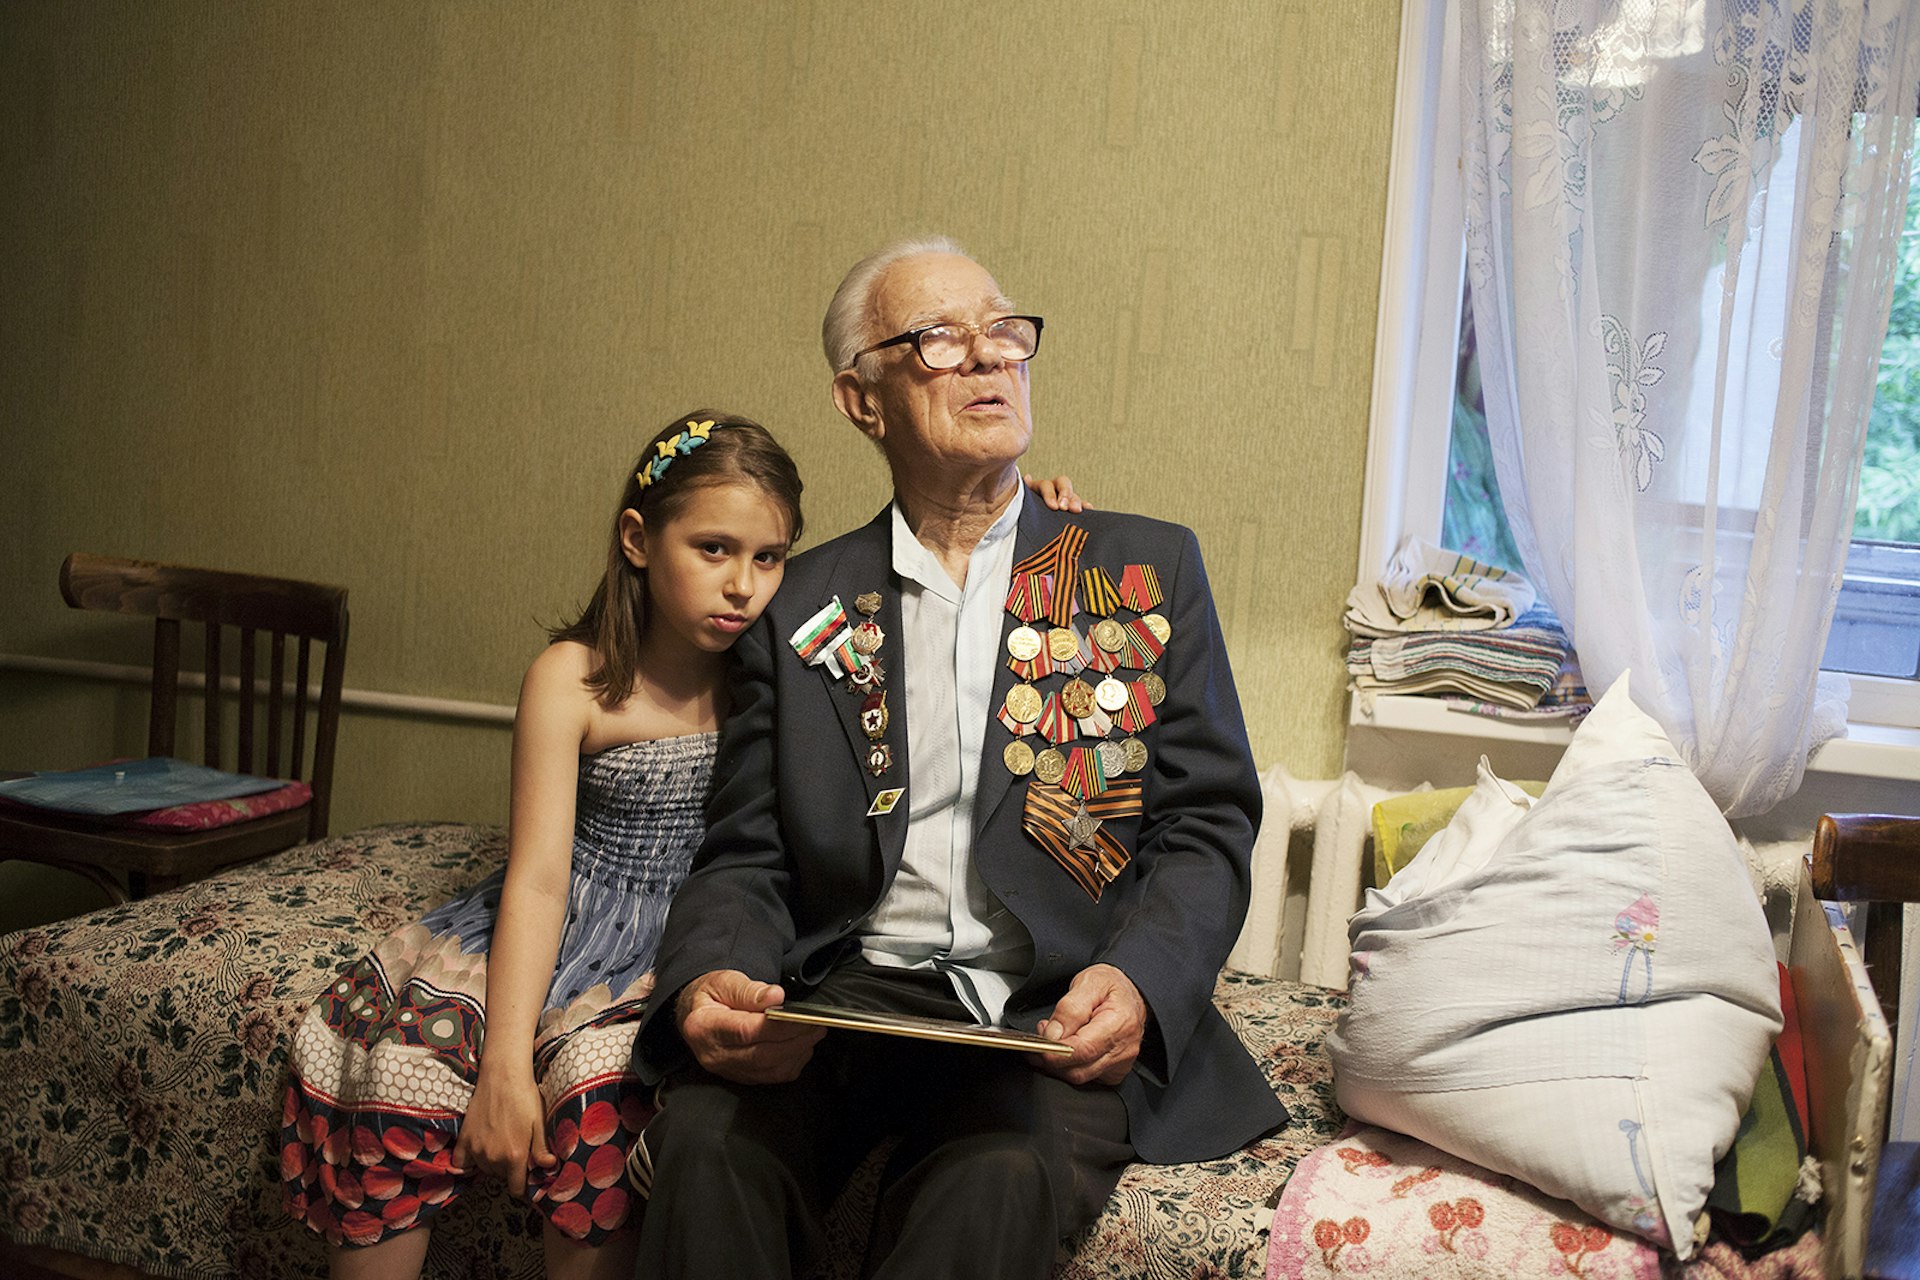 Veteran Fadejew Jakob Iwanowitsch with his granddaughter